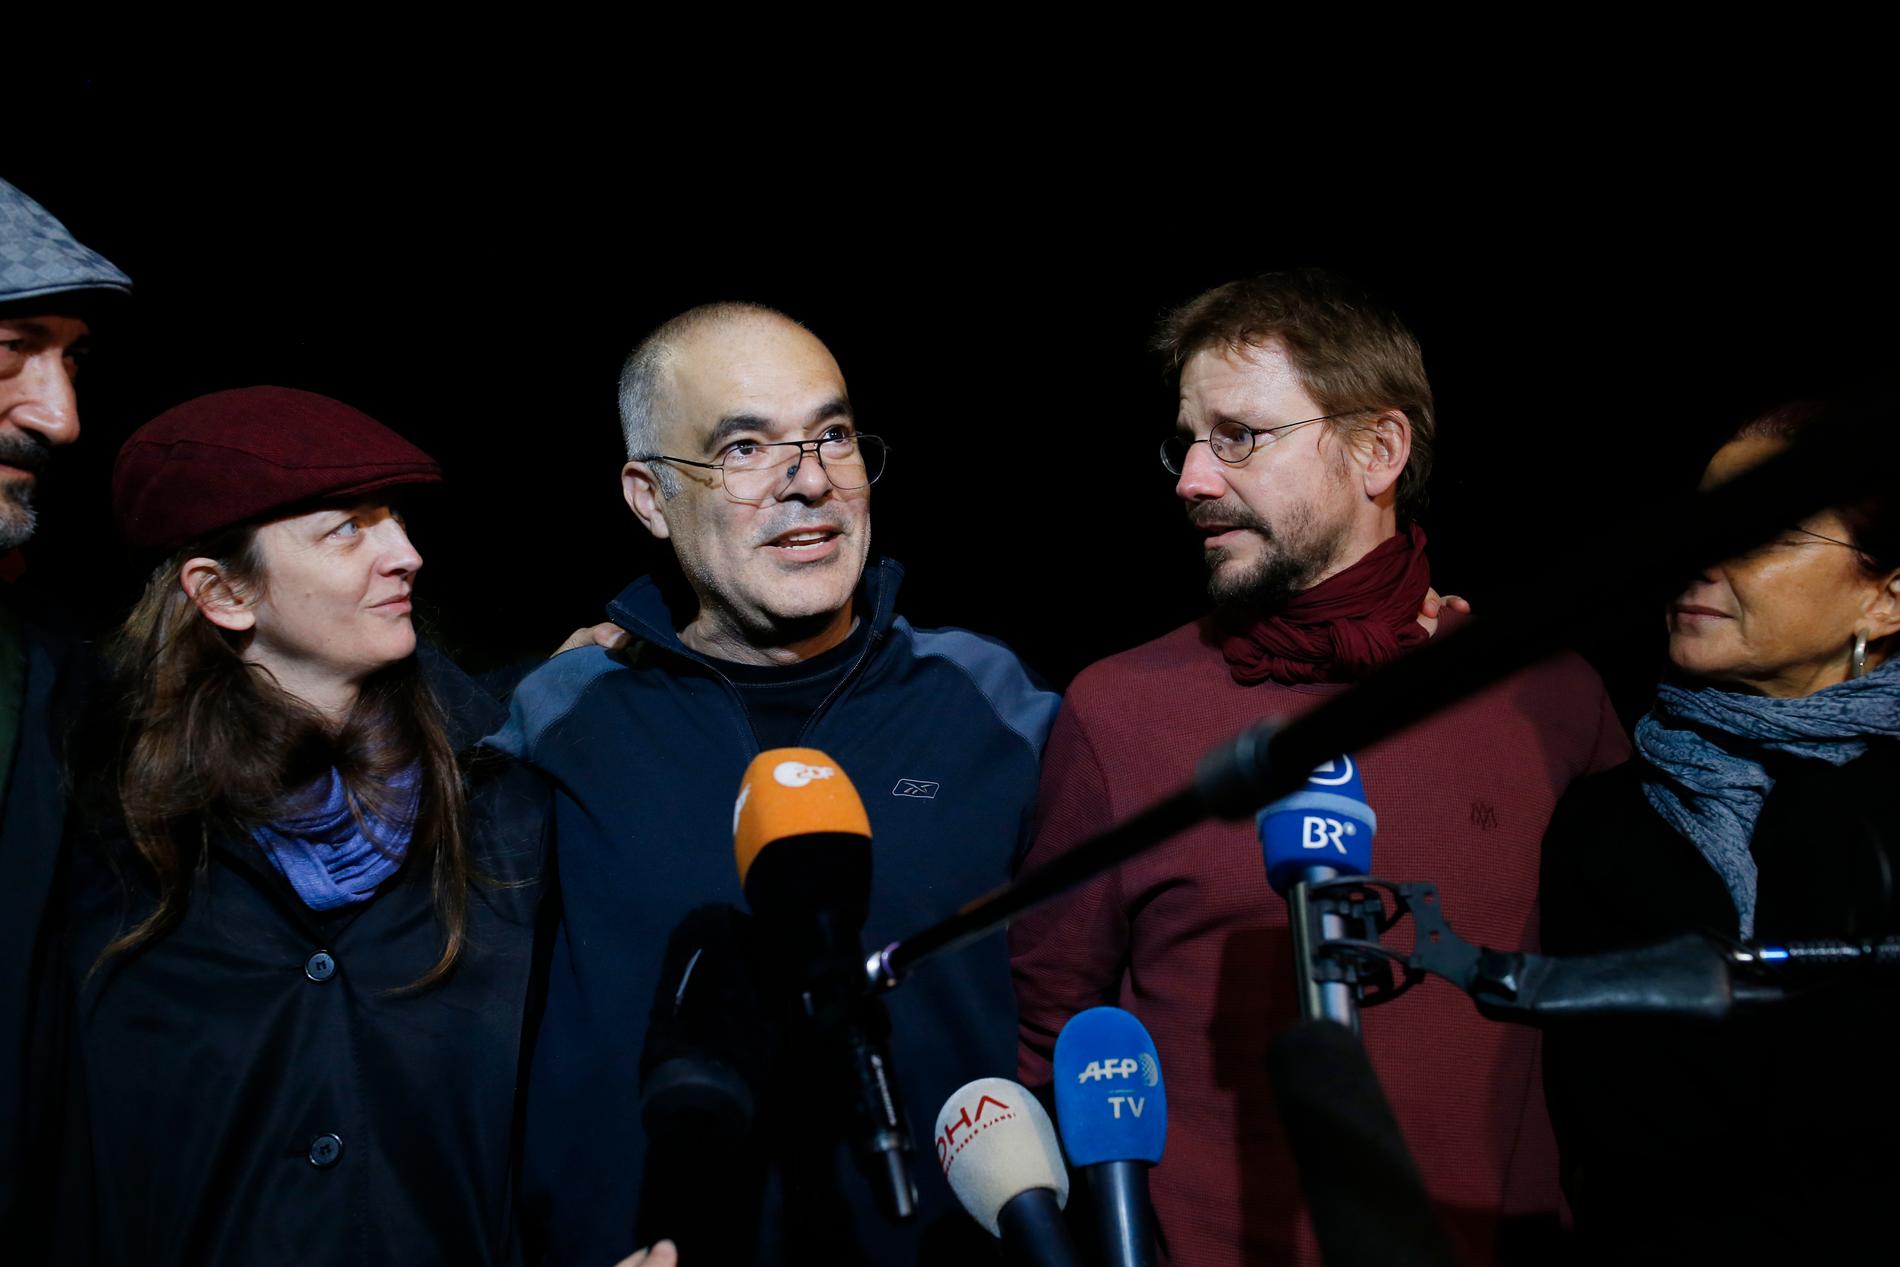 Svenske Ali Gharavi och tyske Peter Steudtner när de släpptes mot borgen efter fyra månader i häktet för två år sedan.